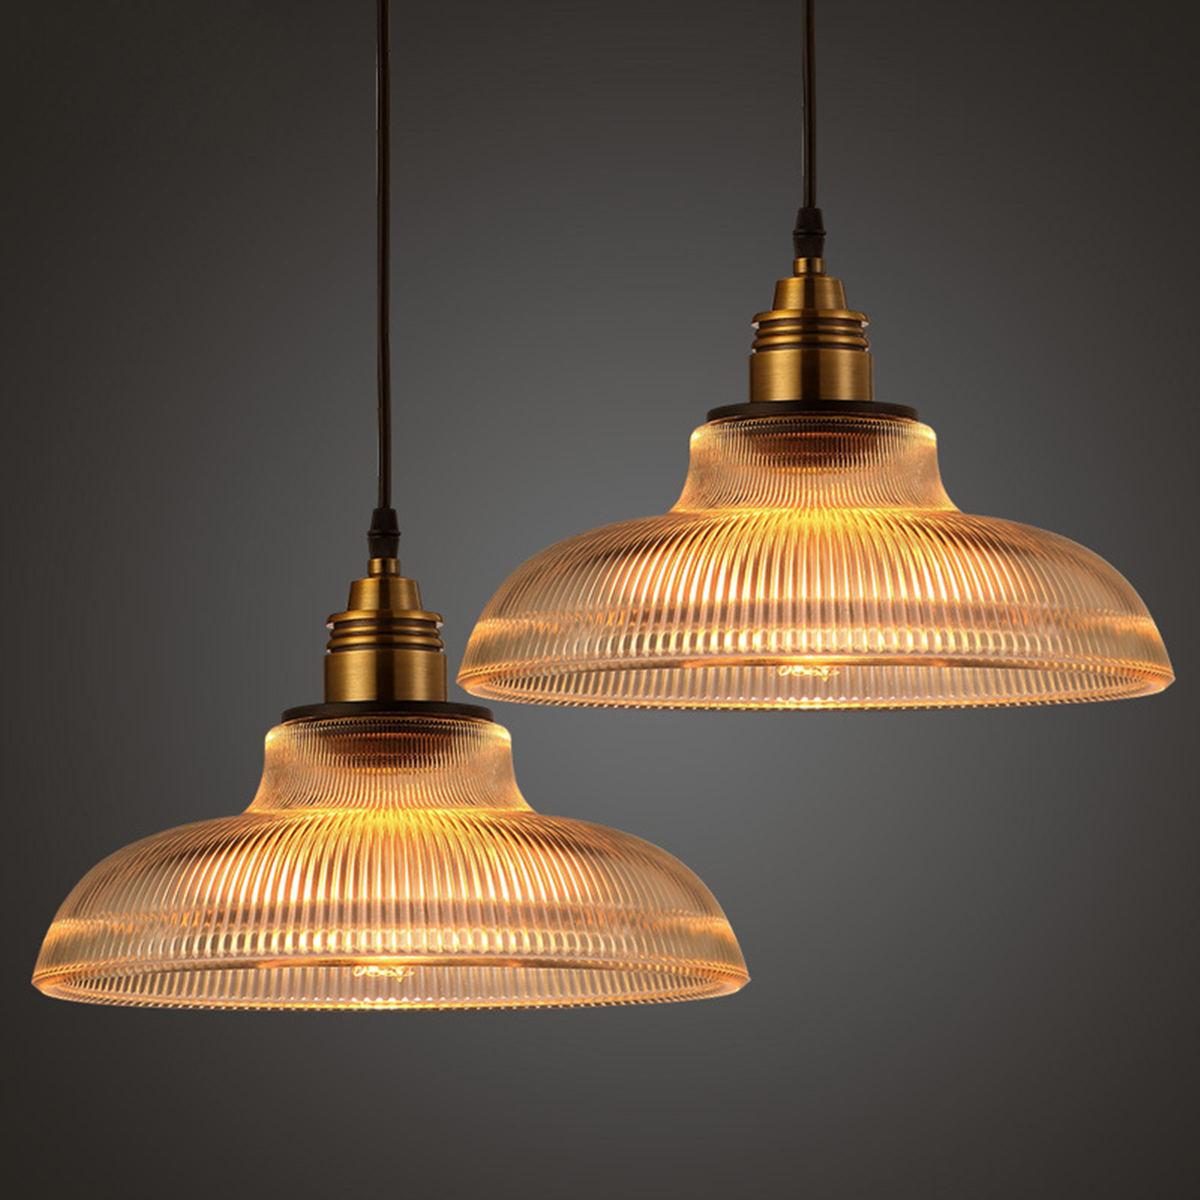 Loft-décoration-vintage industriel Chaînes pendule Lampe glass lamp shade 3pcs